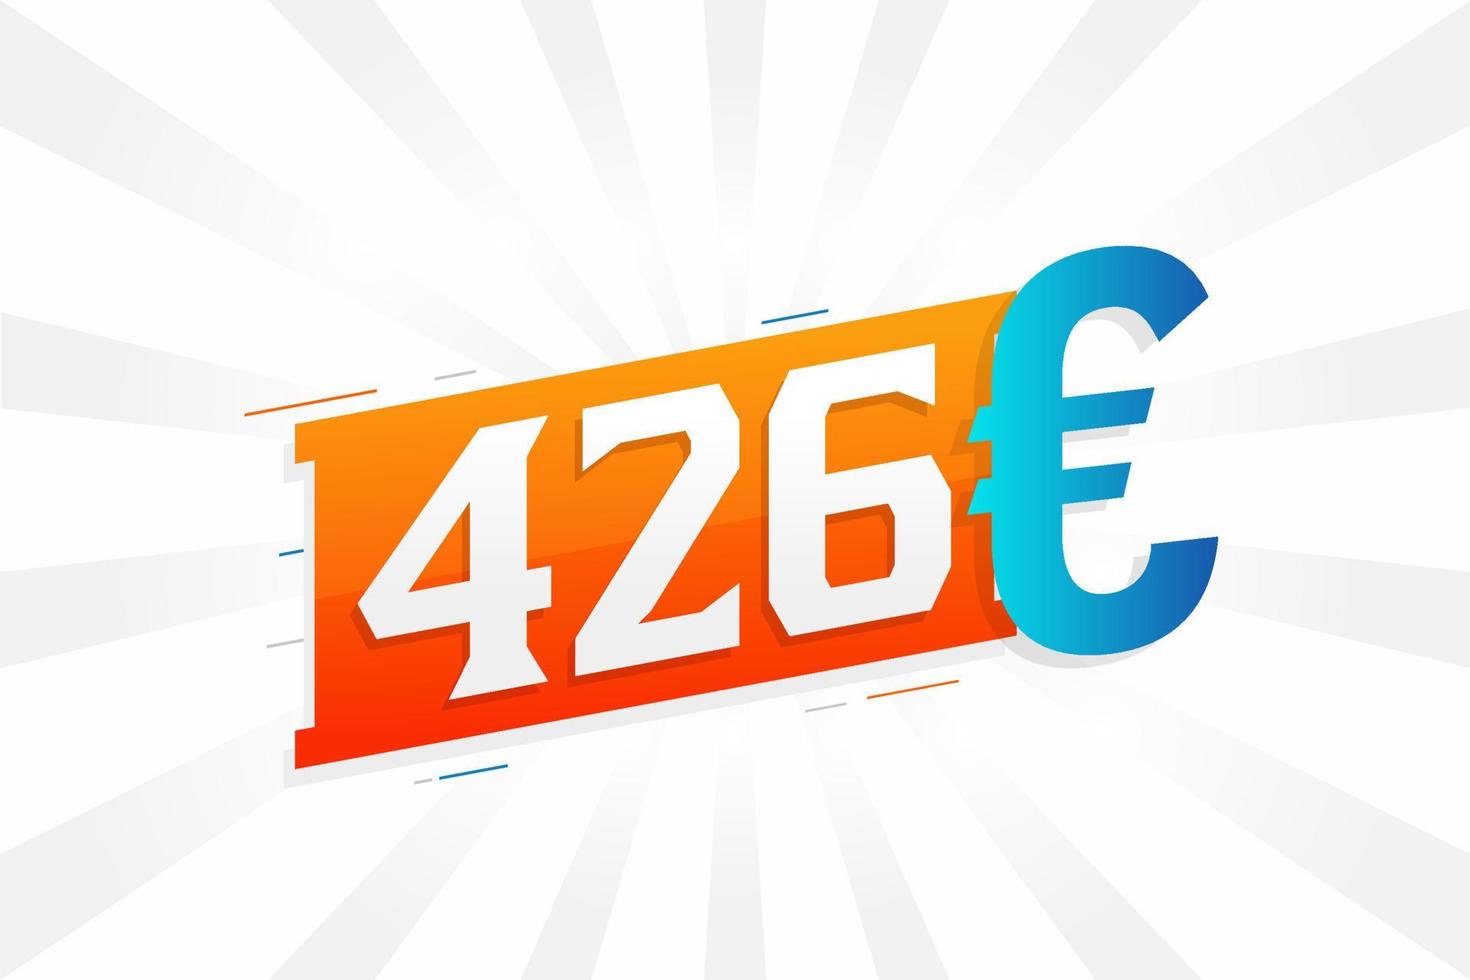 Symbole de texte vectoriel de devise 426 euros. 426 euros vecteur de stock d'argent de l'union européenne